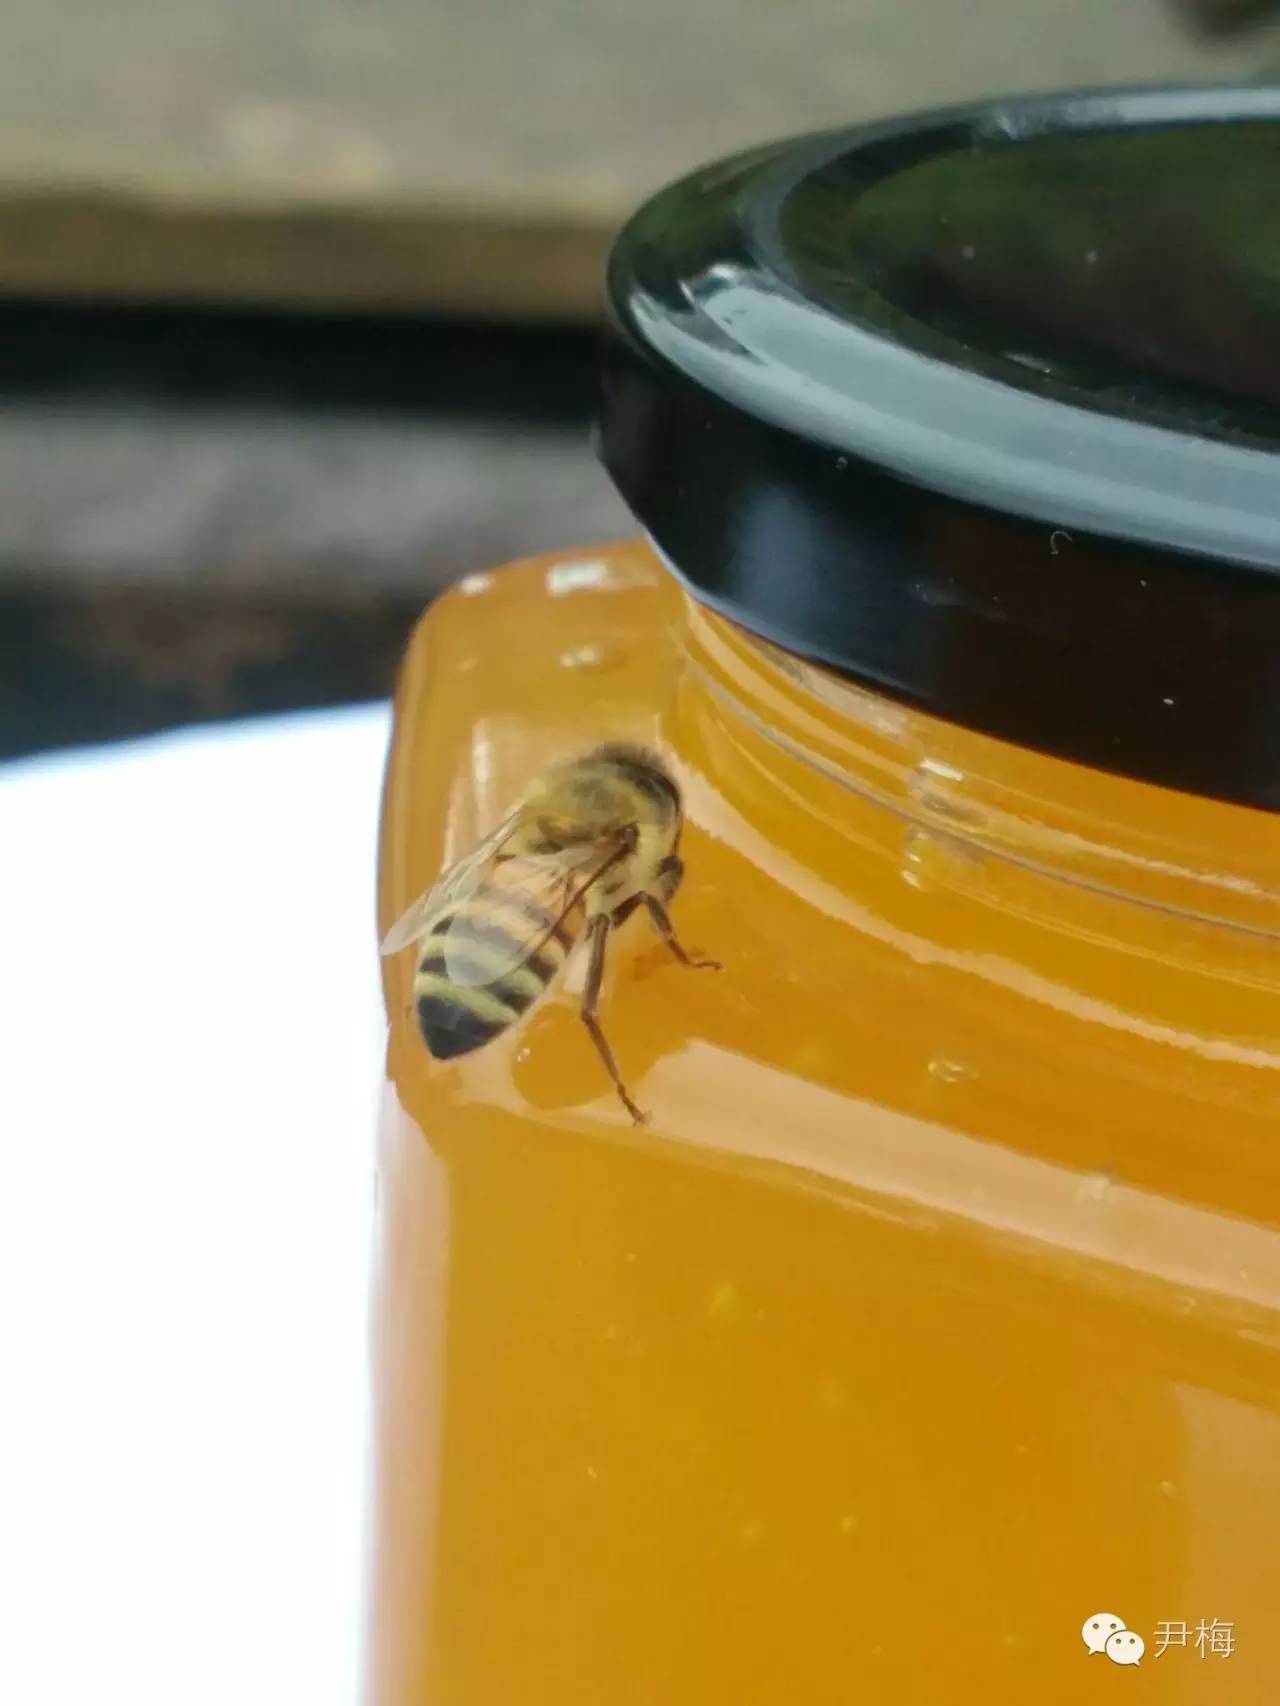 心血管 西红柿和蜂蜜 牛奶蜂蜜面膜 蜂蜜水减肥 蜂群排列